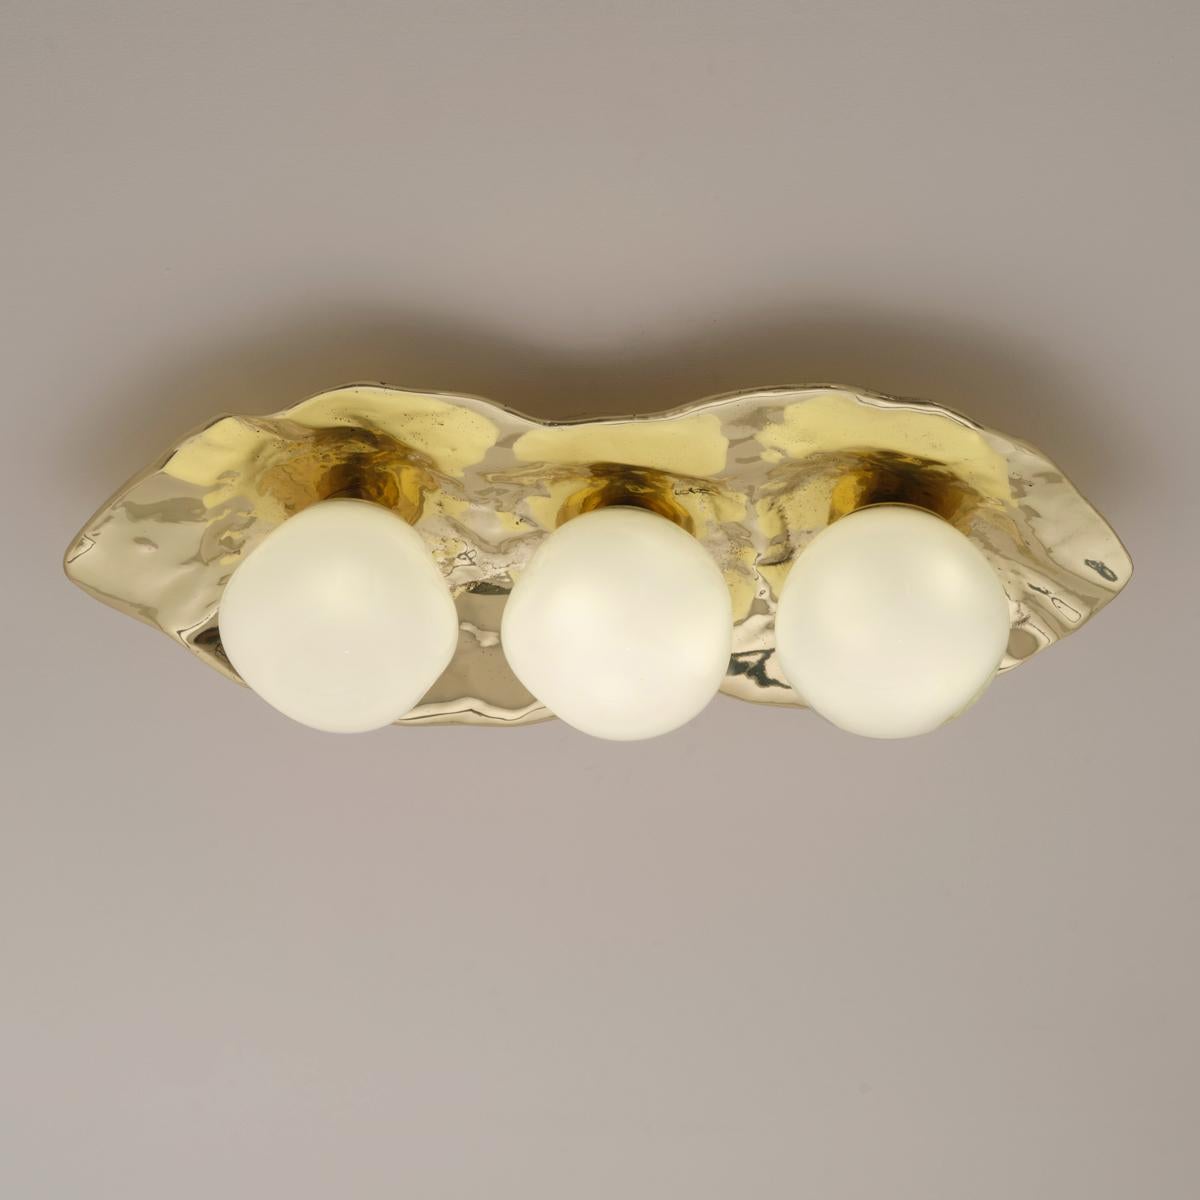 Die Deckenleuchte Shell ist aus Messing geschmiedet und bildet eine organische Muschel, in die drei unserer mundgeblasenen Sfera-Gläser aus Murano eingebettet sind.

Auf den ersten Bildern ist die Leuchte in poliertem Messing abgebildet - die